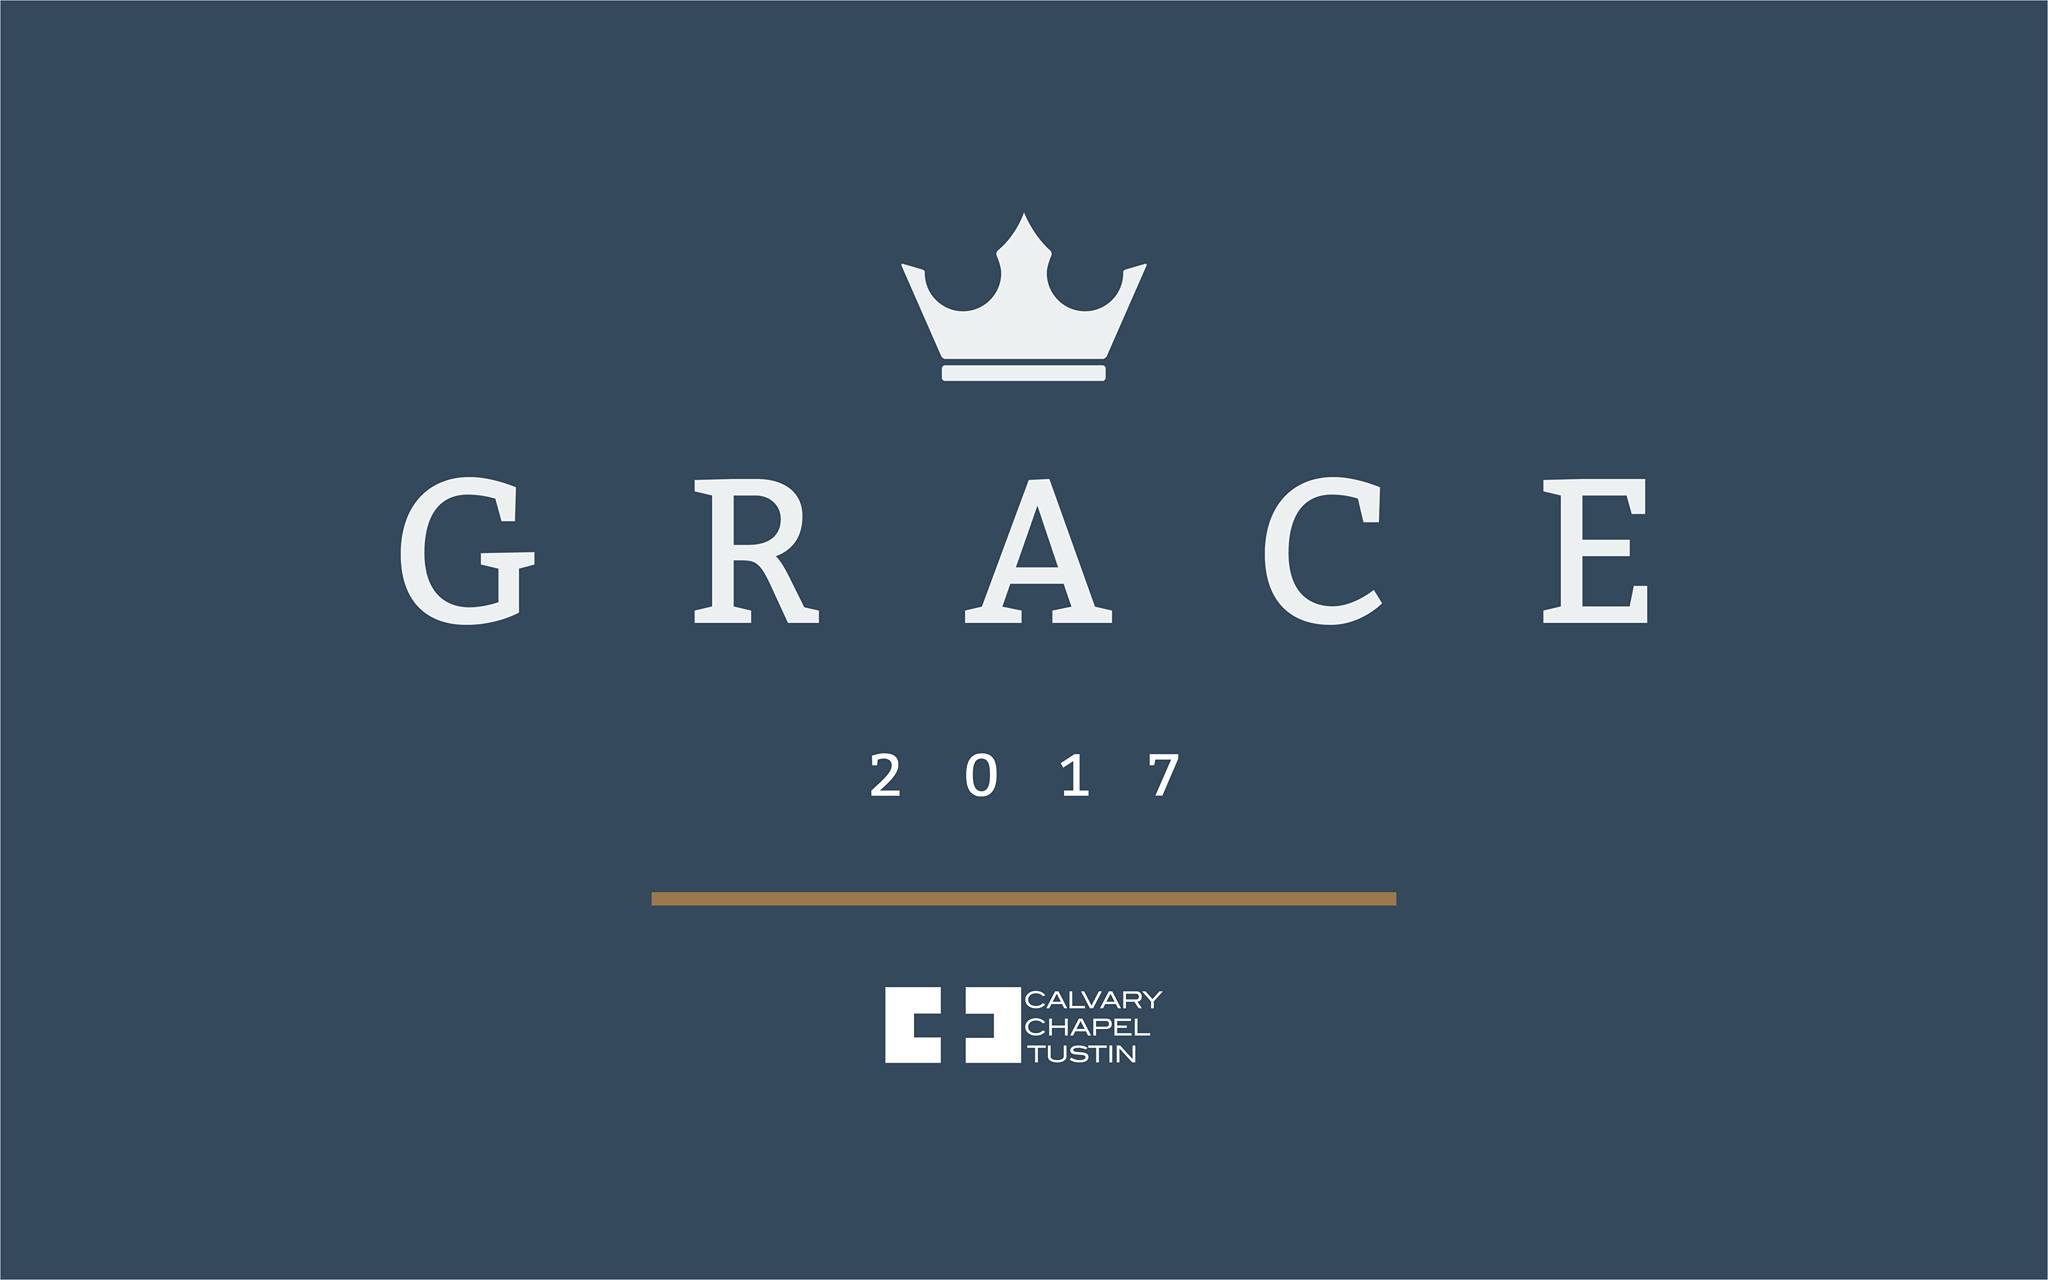 The Fullness of Grace